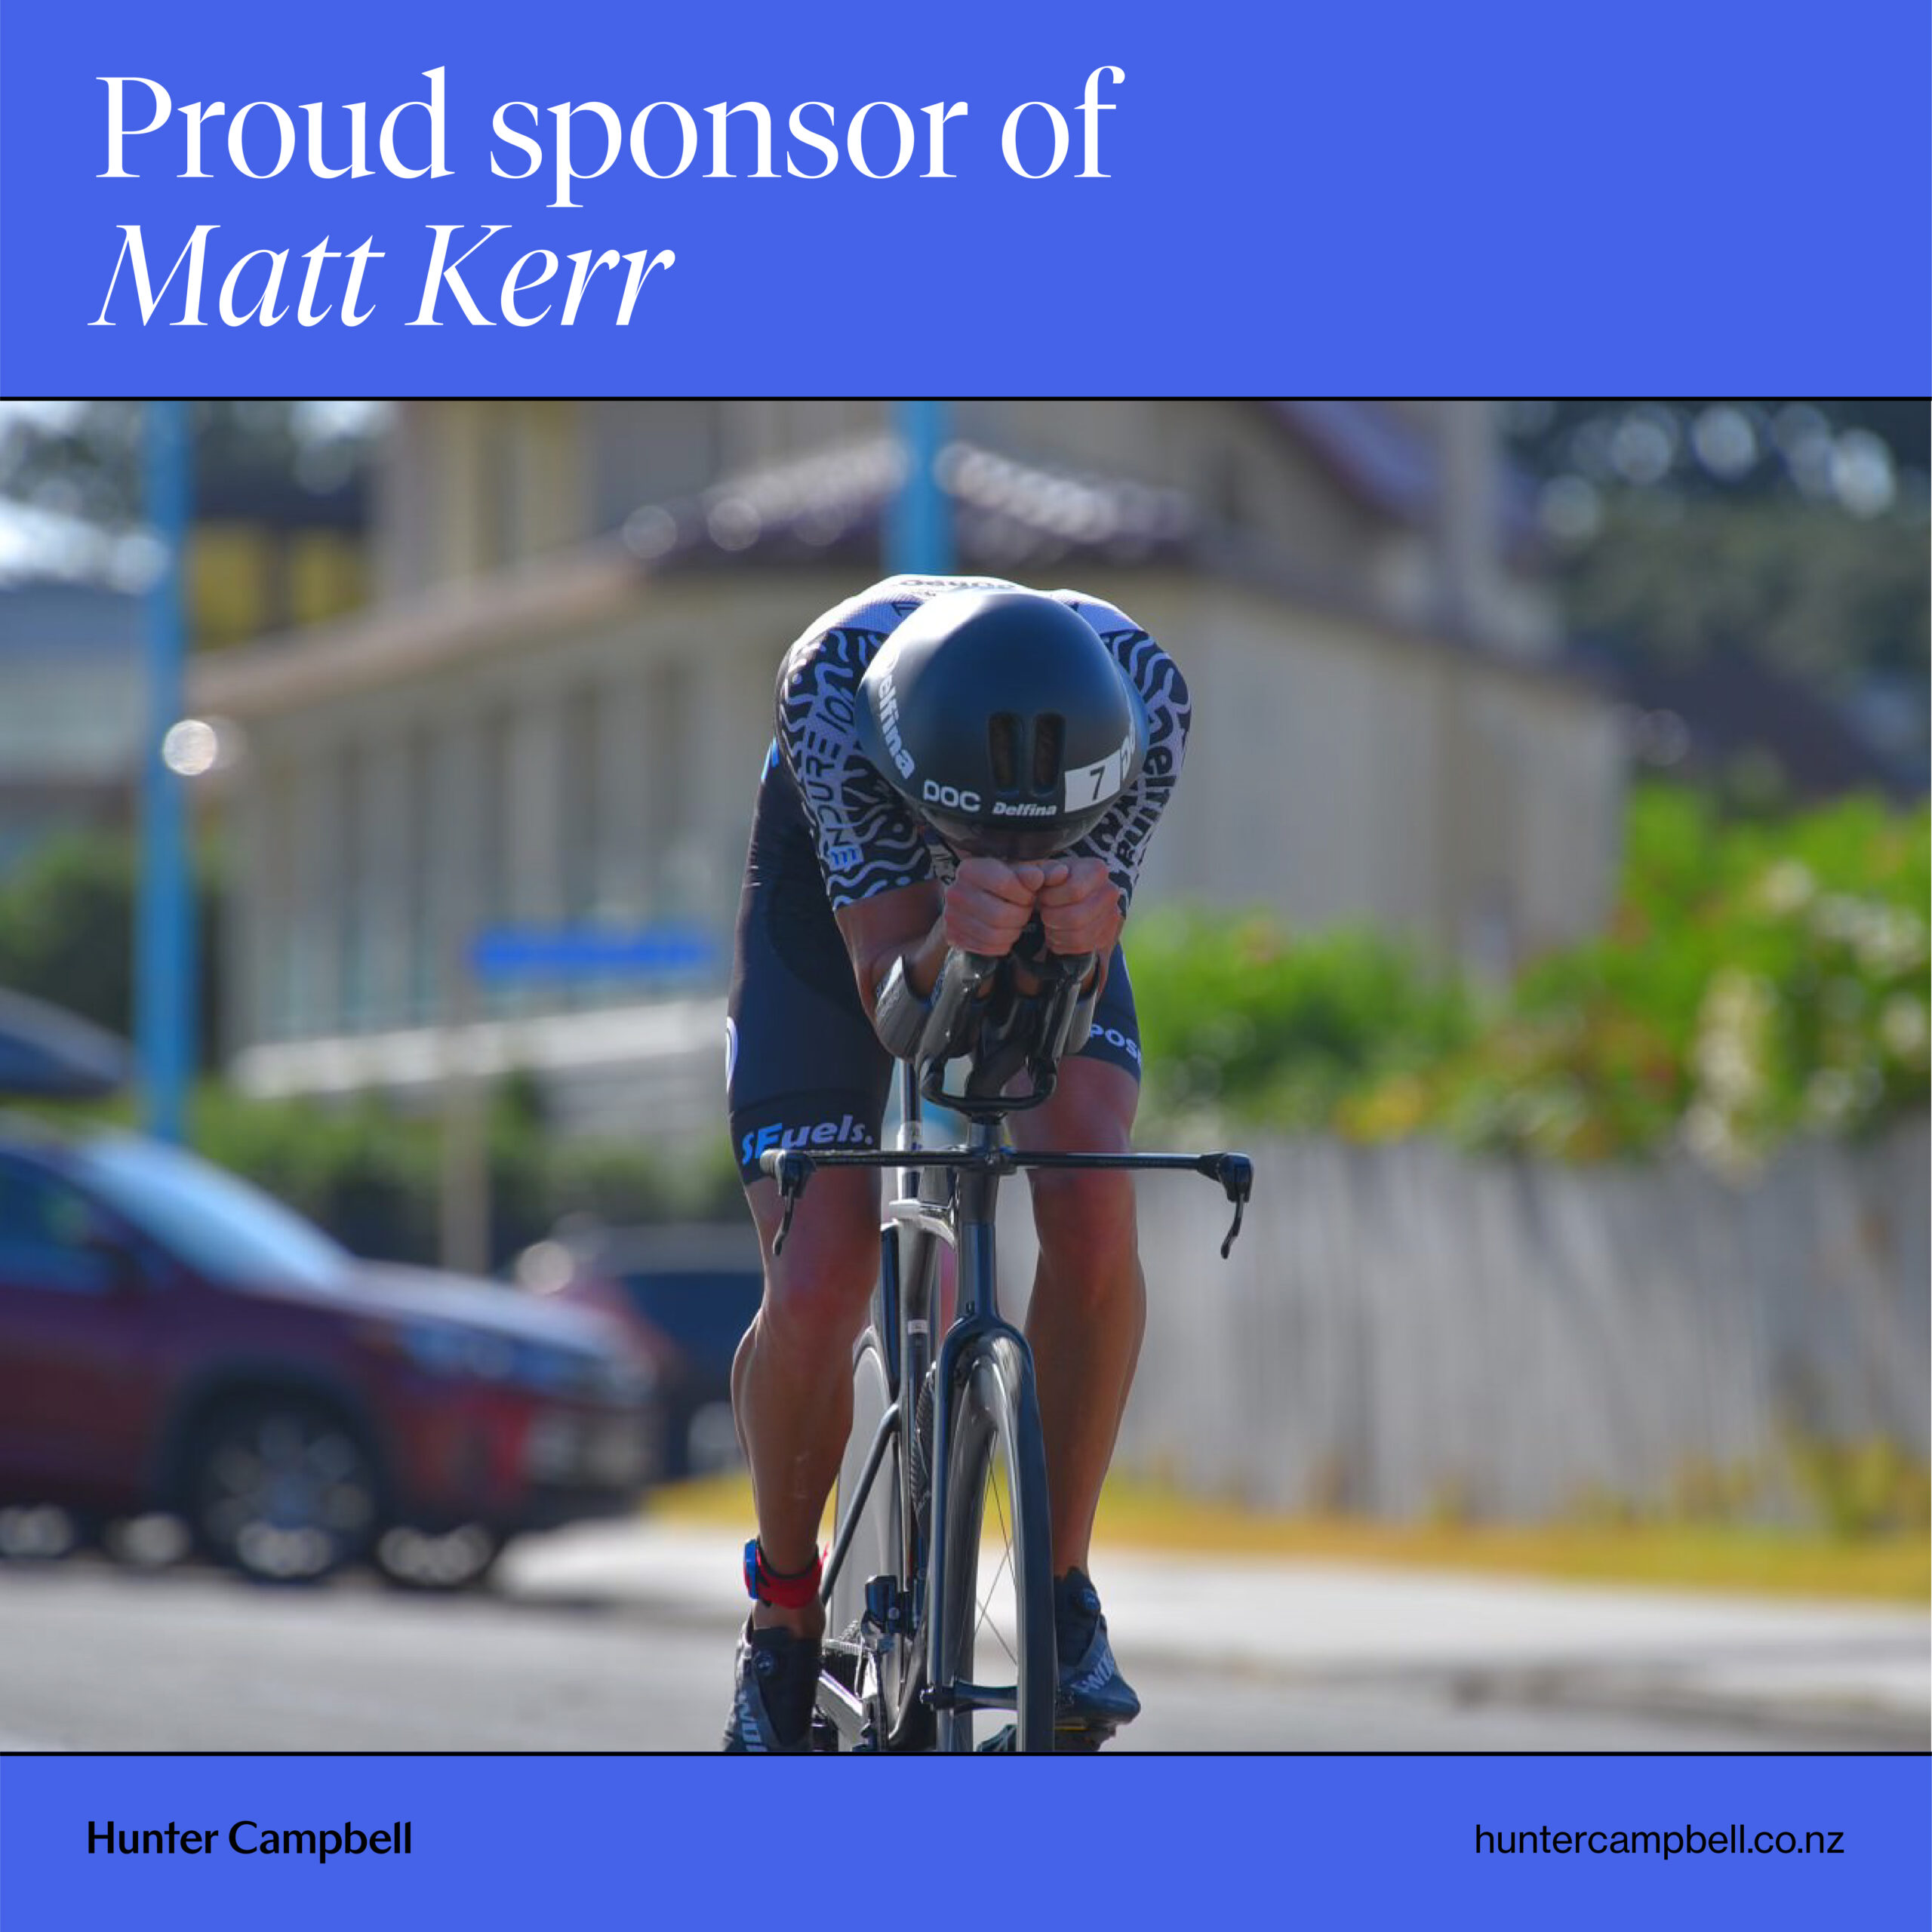 Matt Kerr is making his mark on home soil